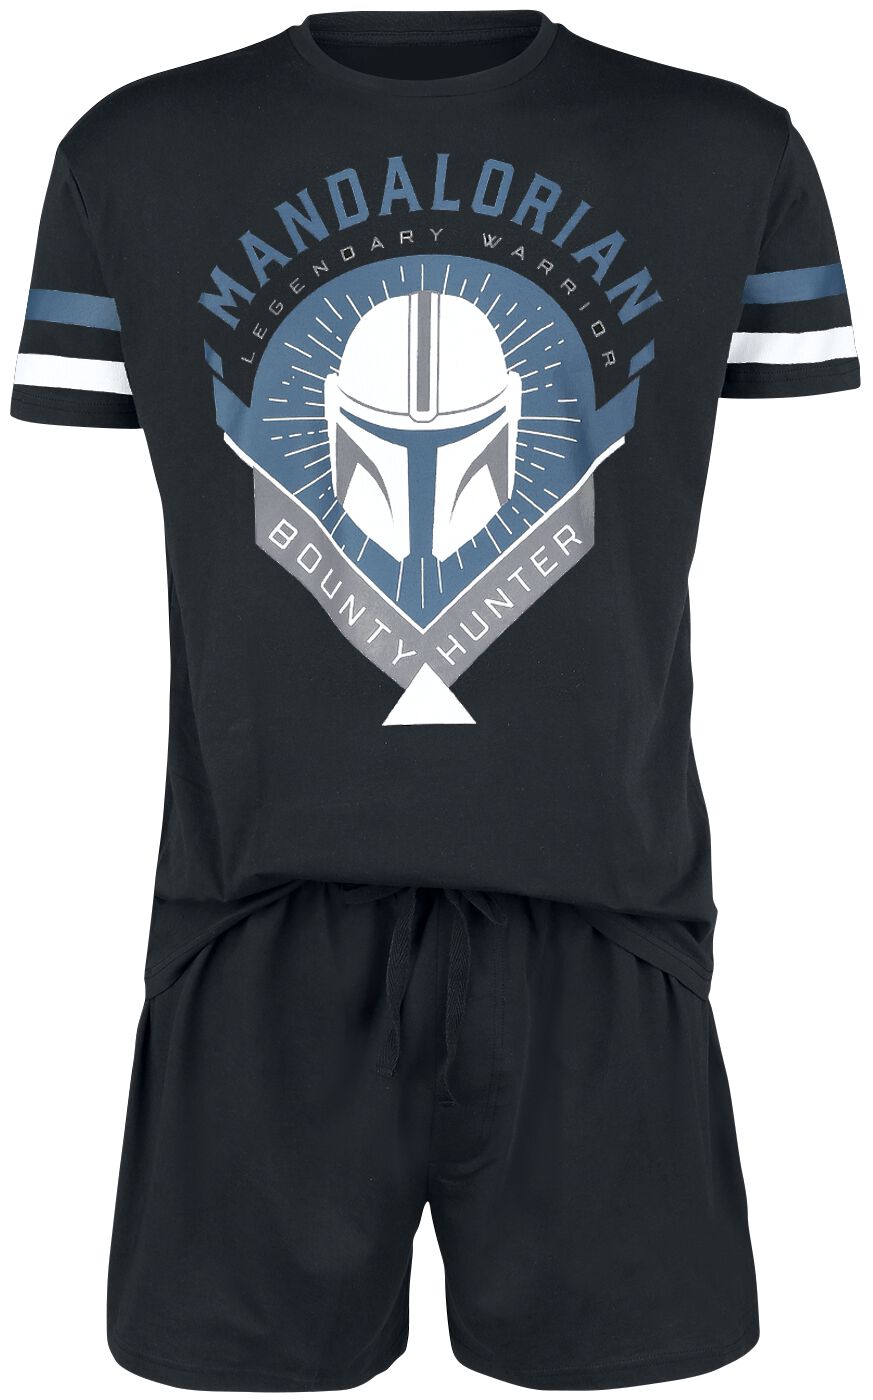 Star Wars Schlafanzug - The Mandalorian - Bounty Hunter - S bis 5XL - für Männer - Größe M - schwarz  - EMP exklusives Merchandise!